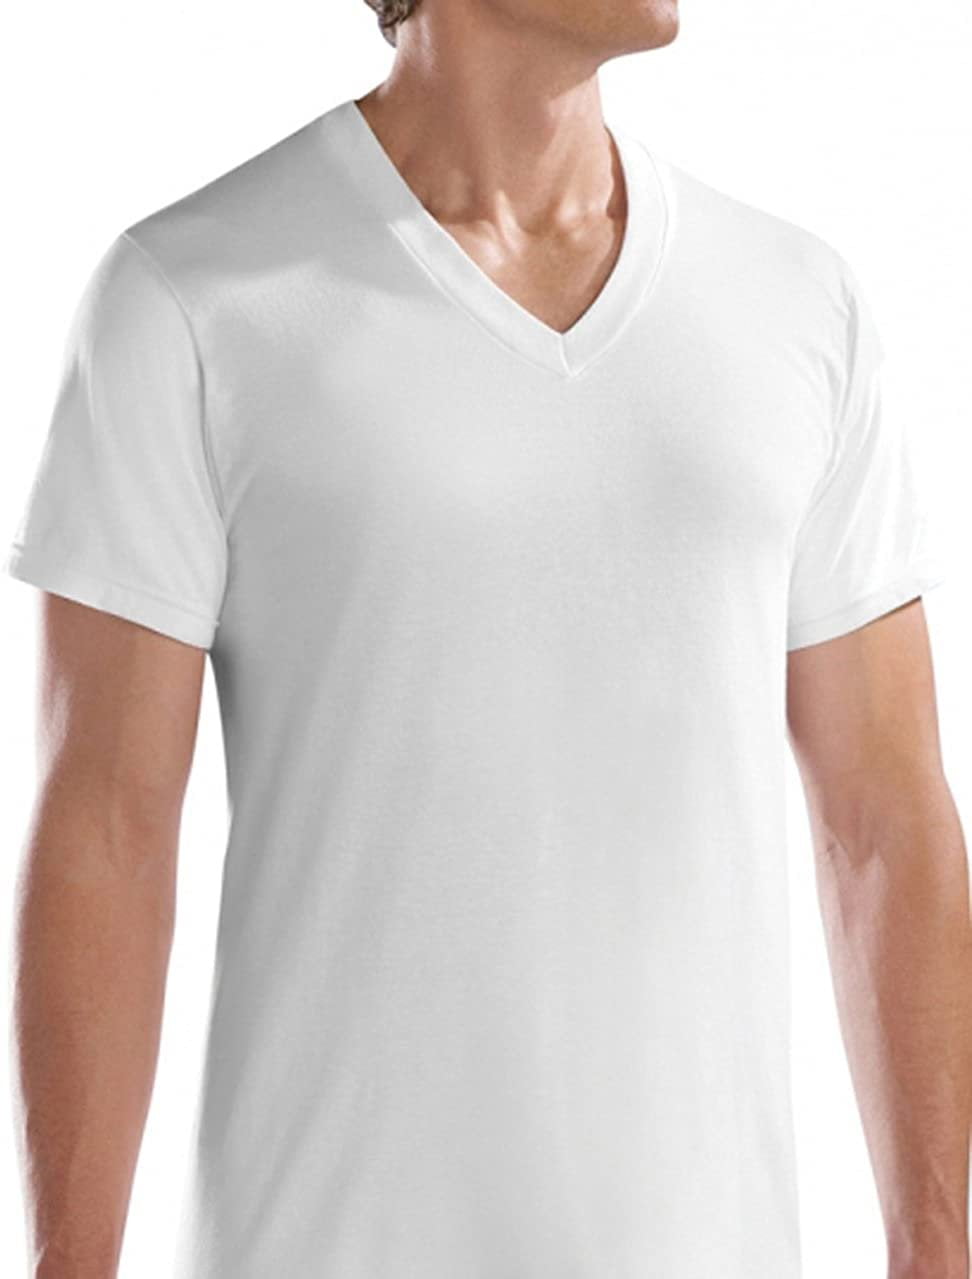 Fruit of the Loom Men's V-Neck White T-Shirts Multi Pack - Walmart.com